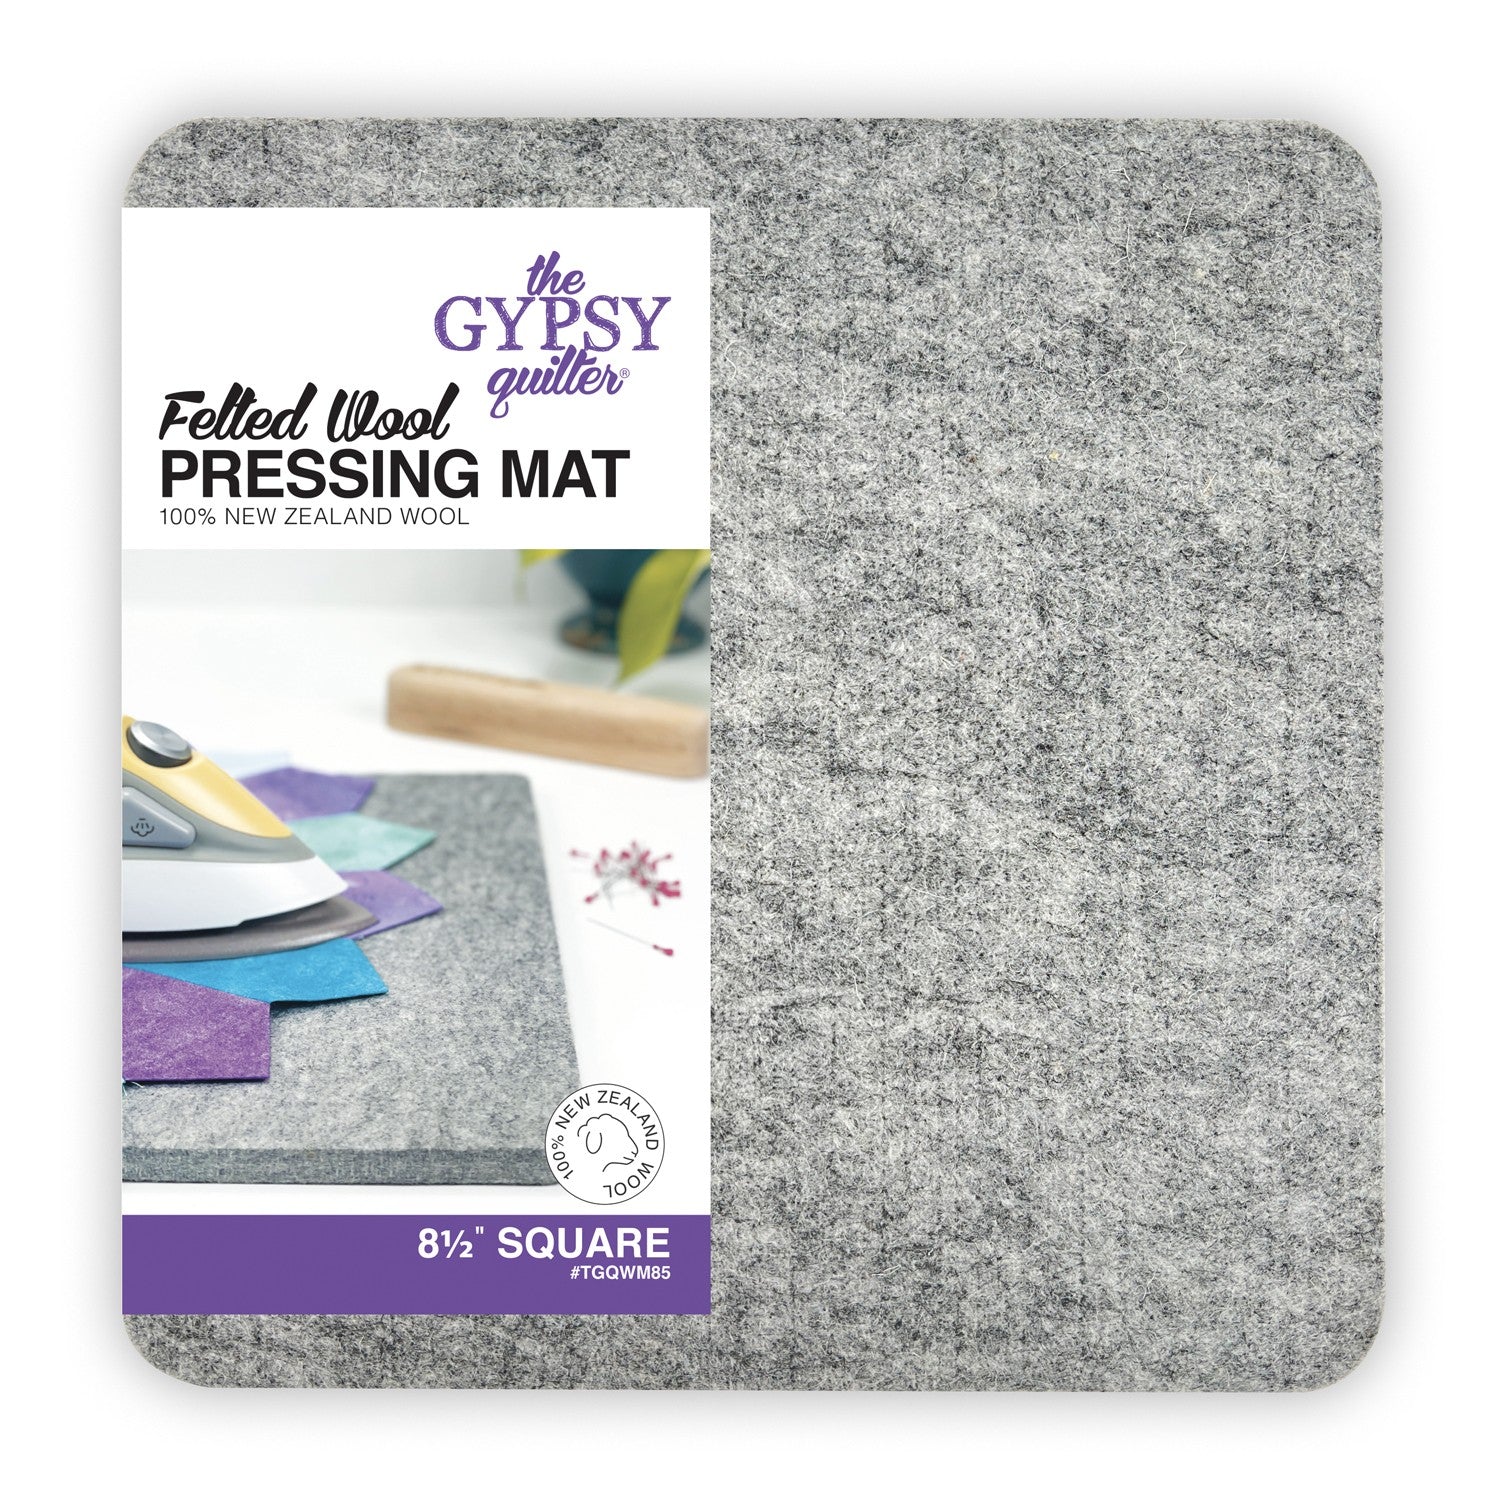 Wool Pressing Mat - 8.5"x8.5"x1.5"